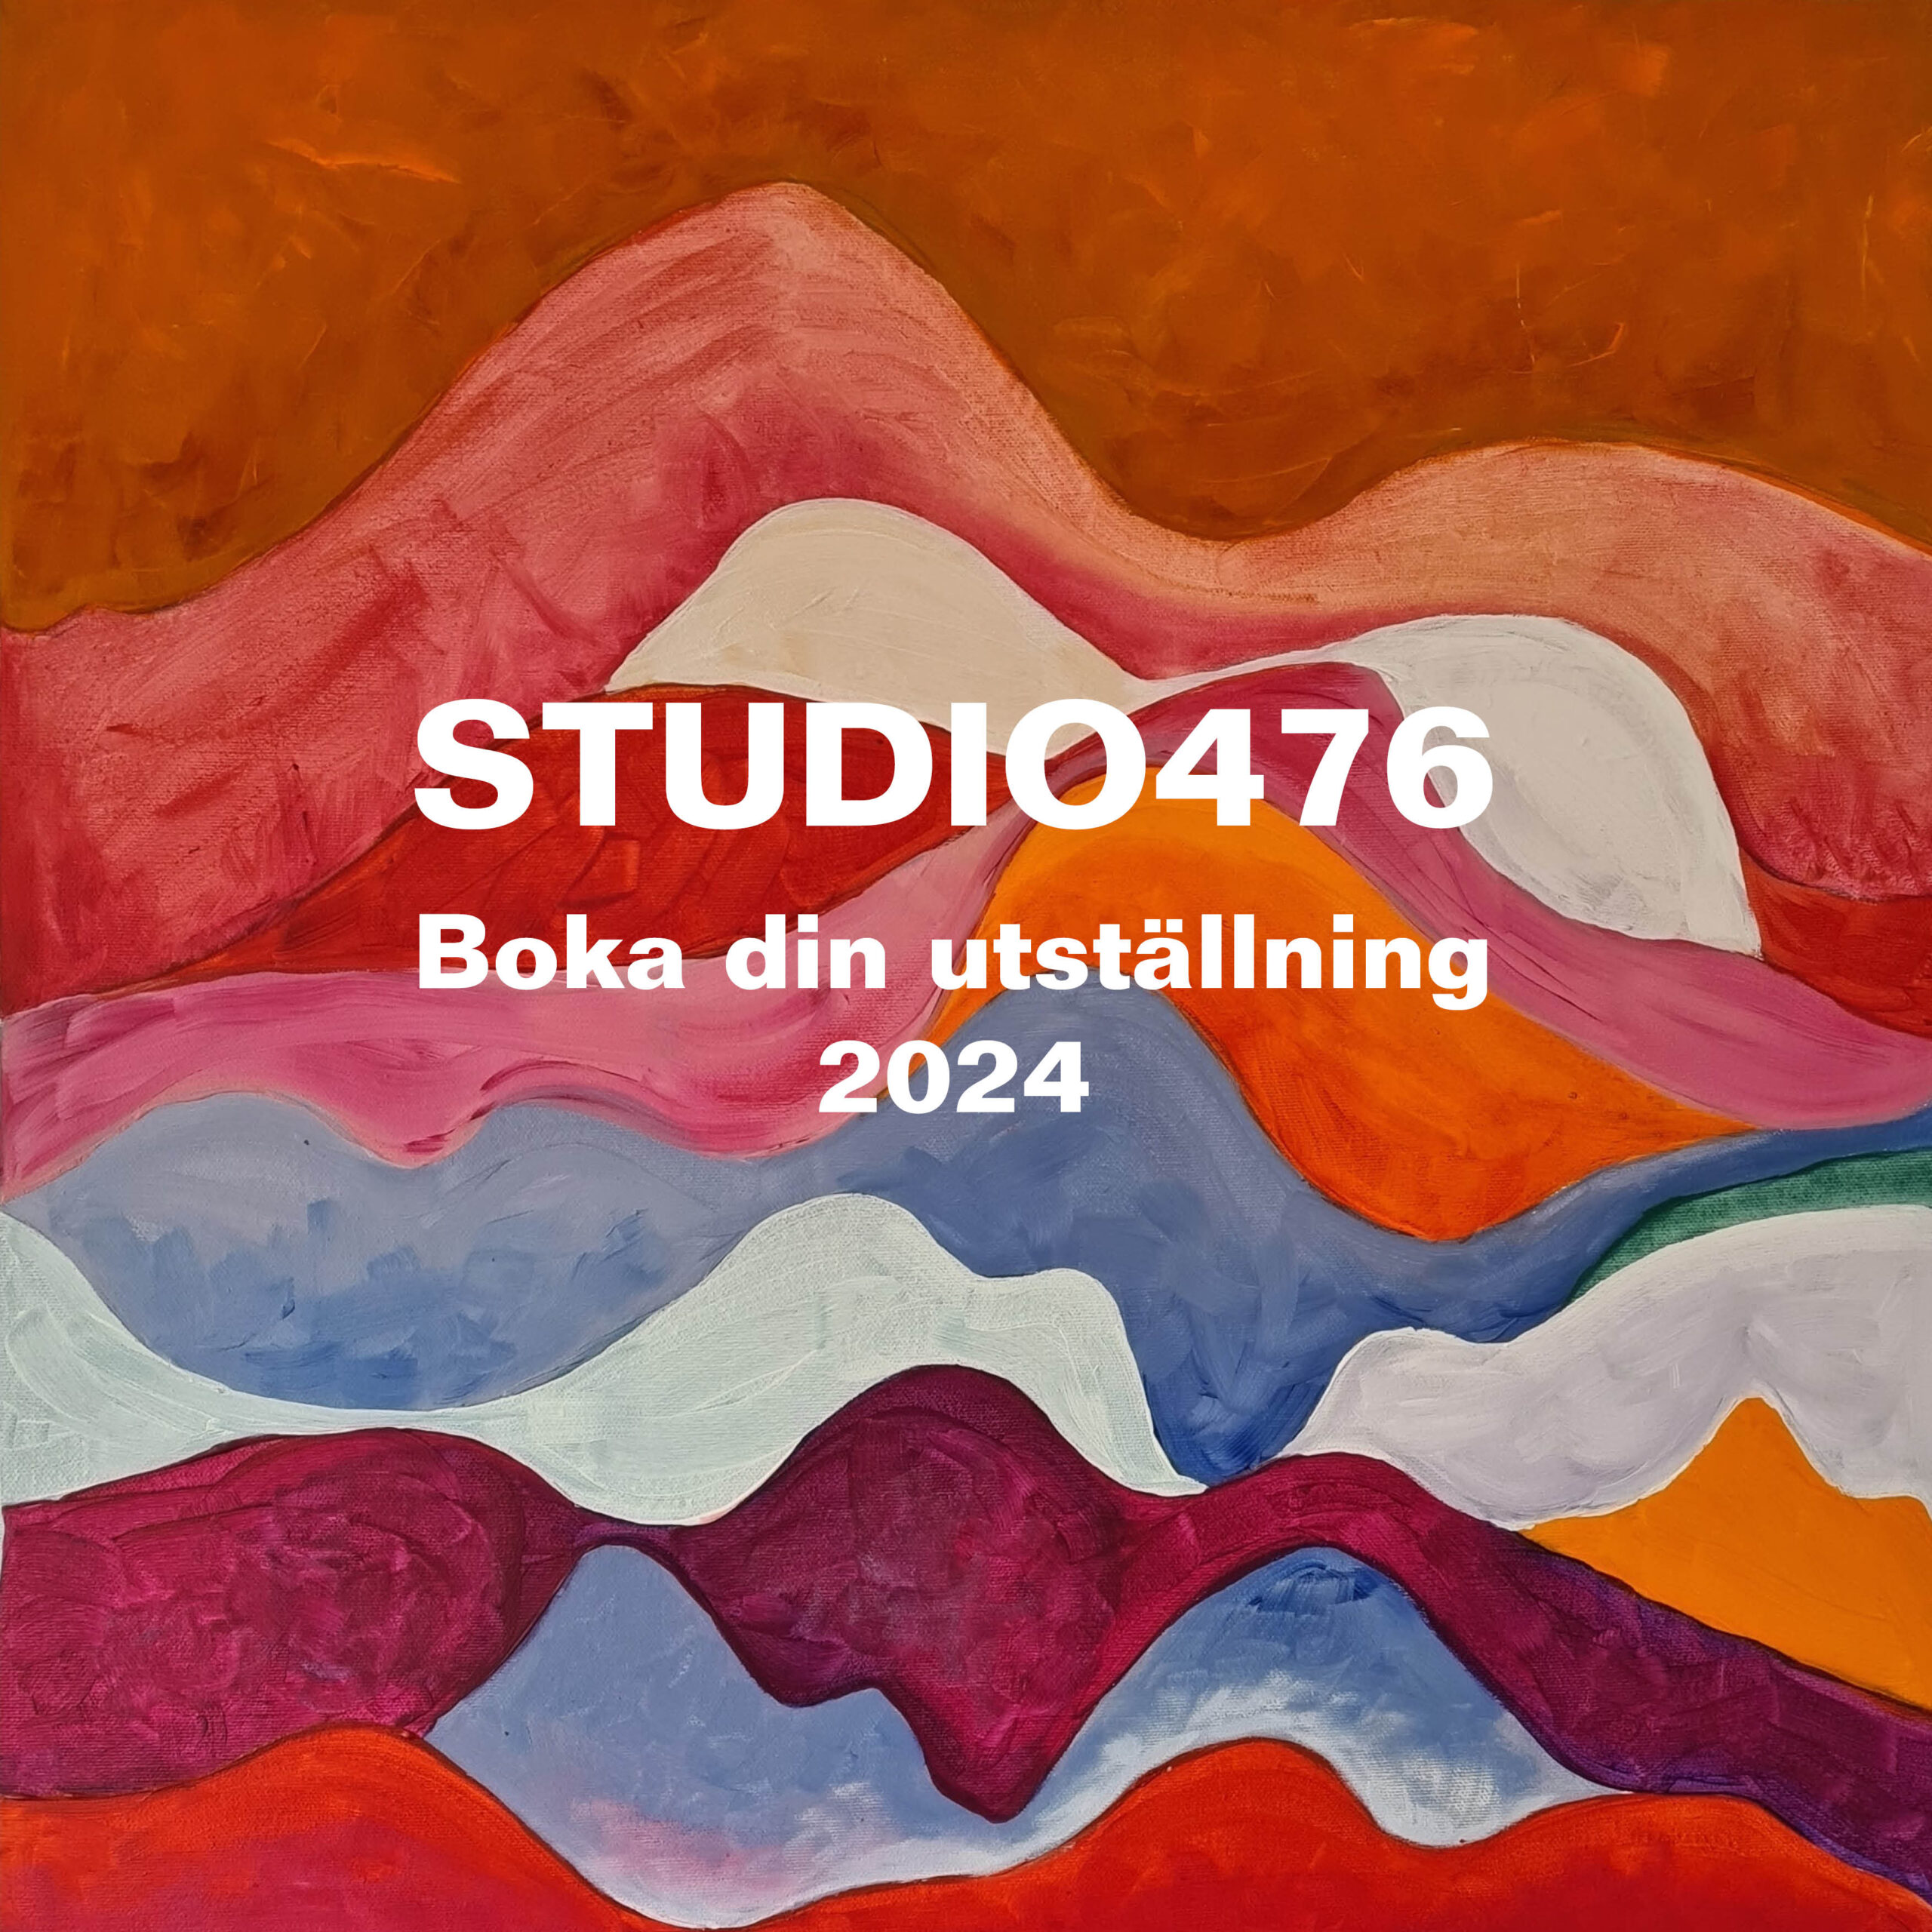 Boka din utställning för 2024 i Studio476